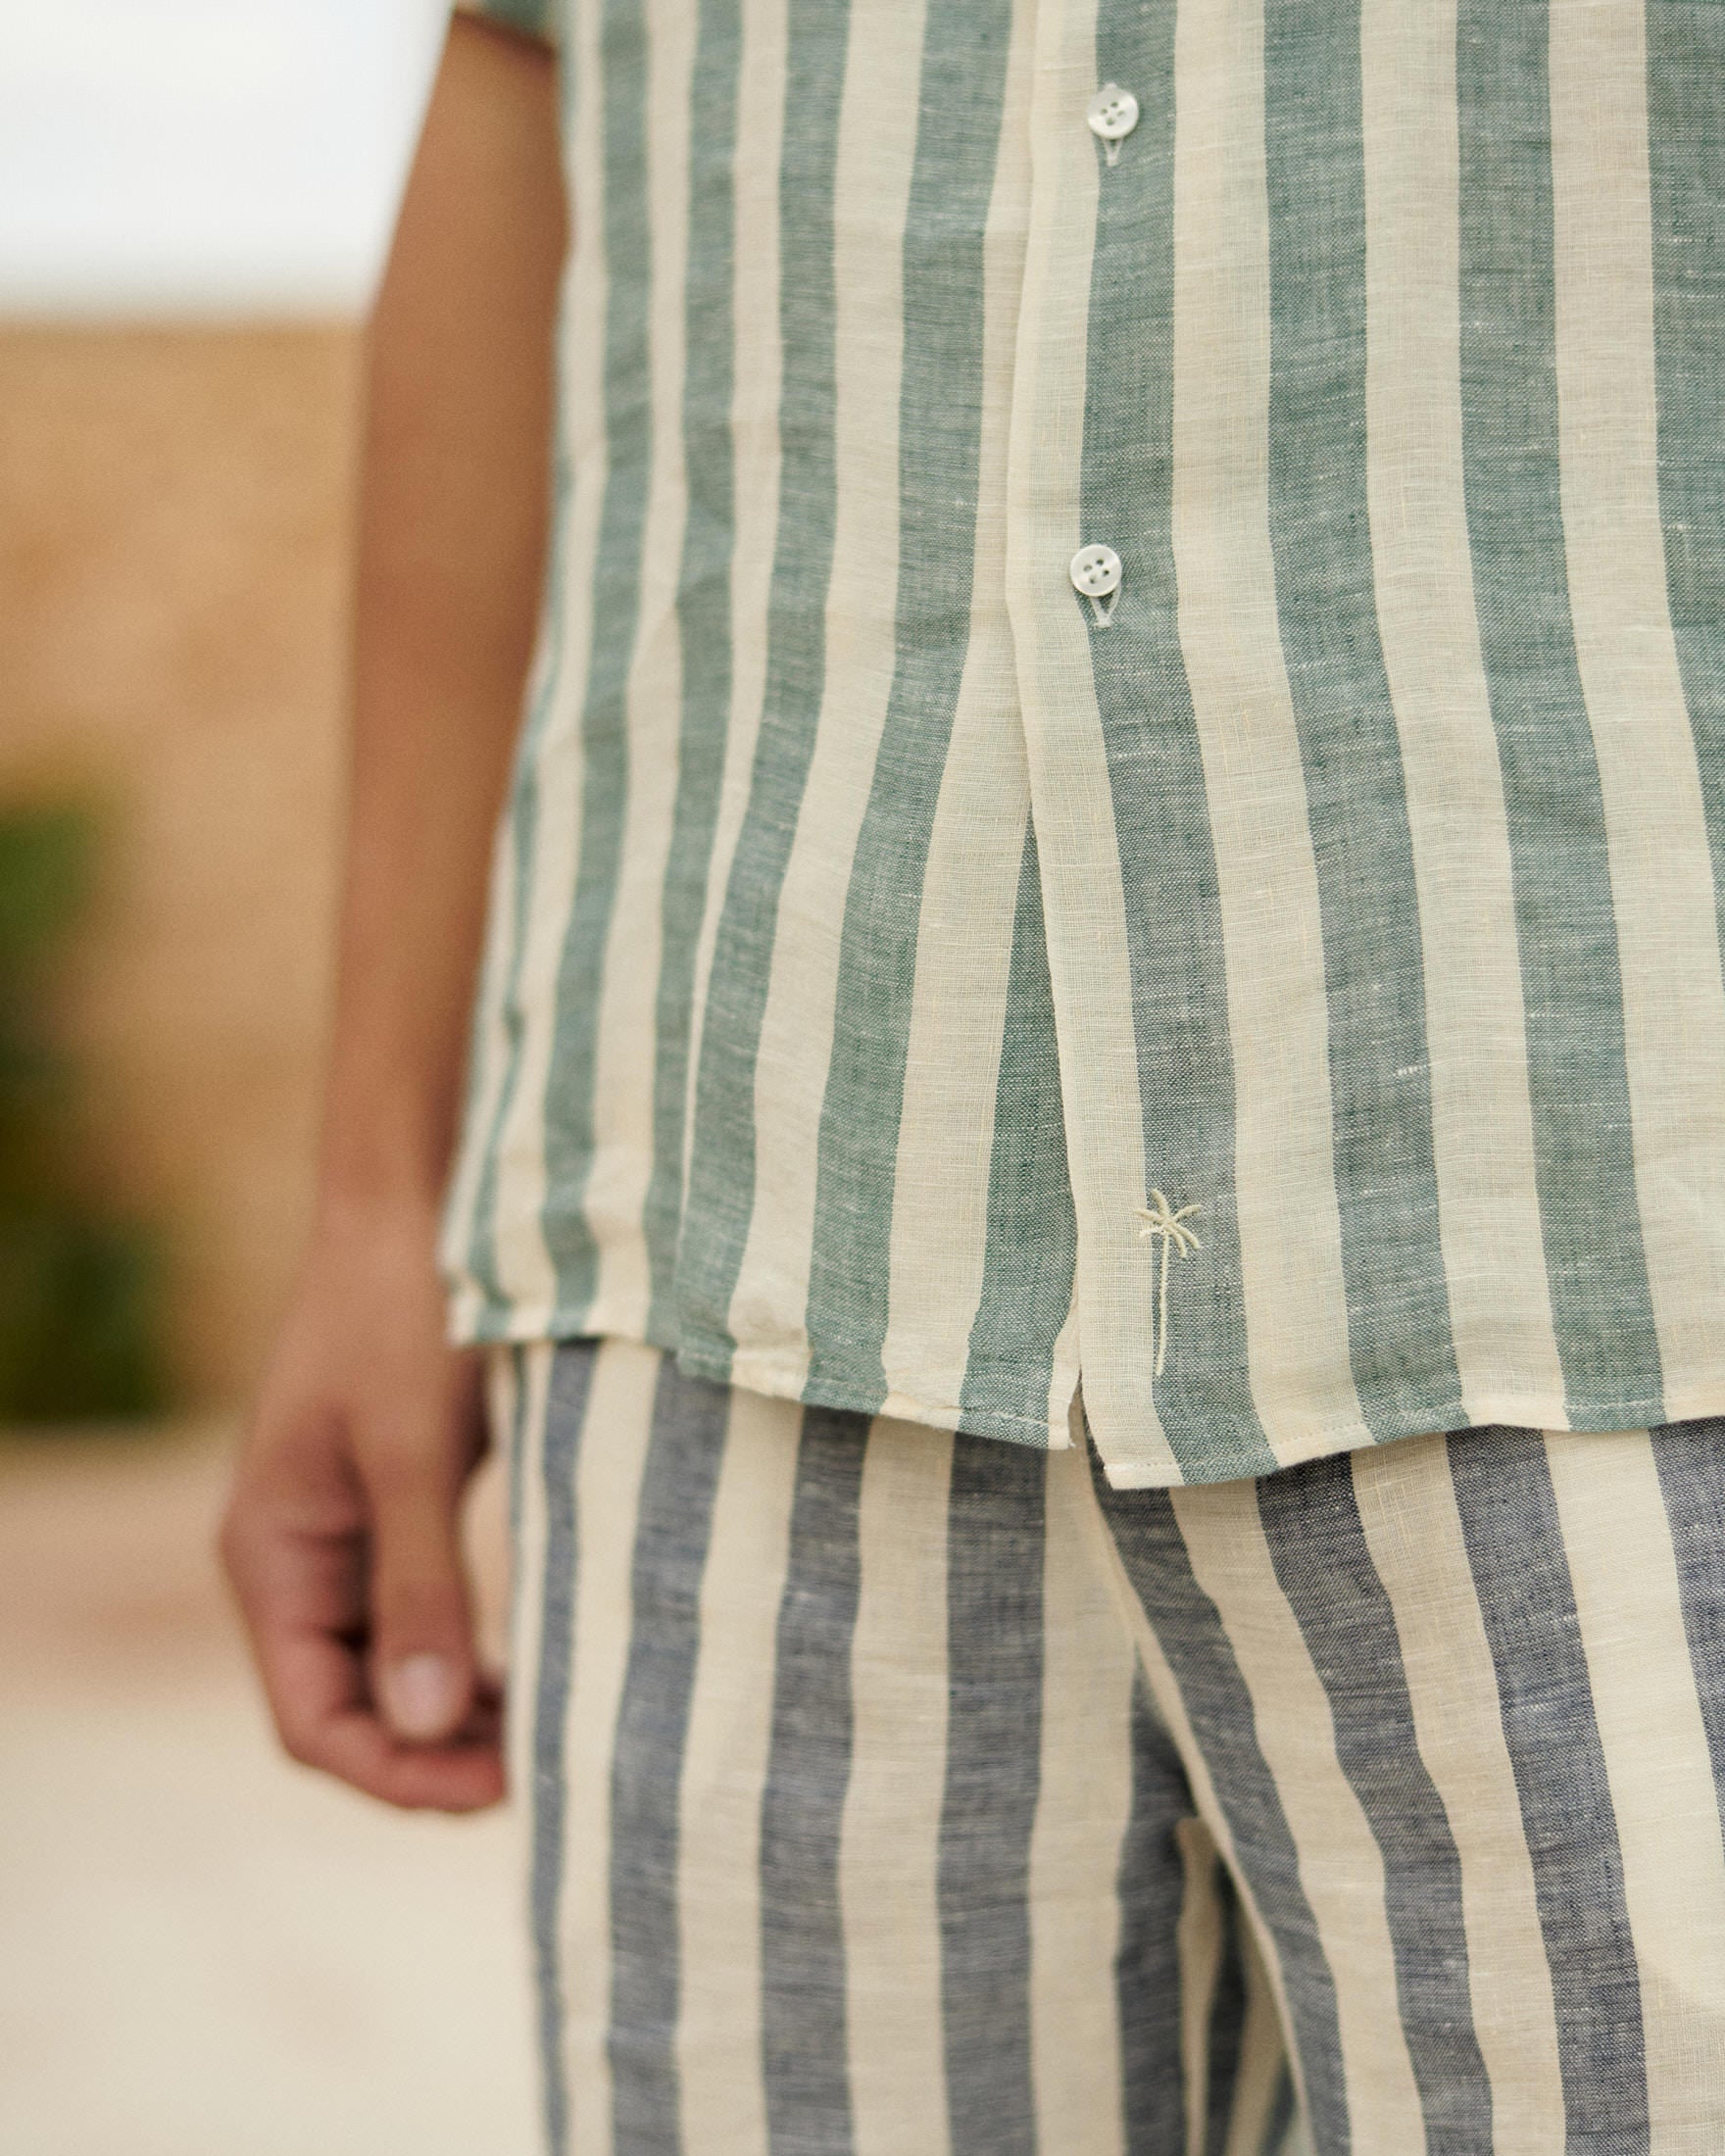 Linen Havana Camp-Collar Shirt - Embroidered Palm - Green Beige Maxi Stripes